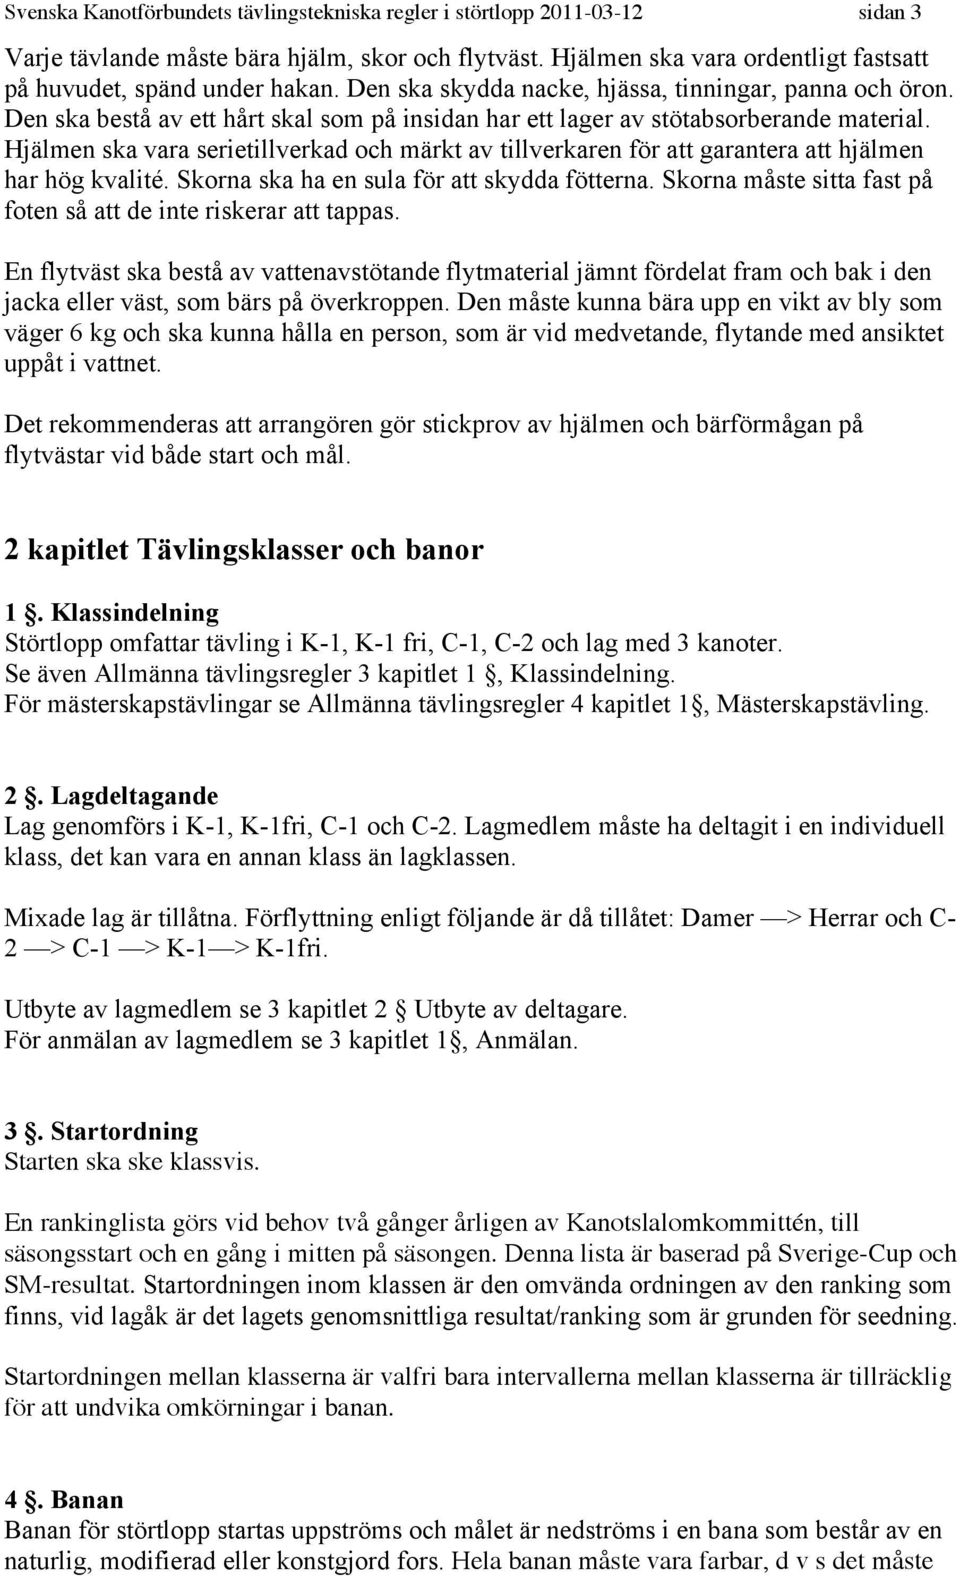 Tävlingstekniska regler Störtlopp - PDF Gratis nedladdning